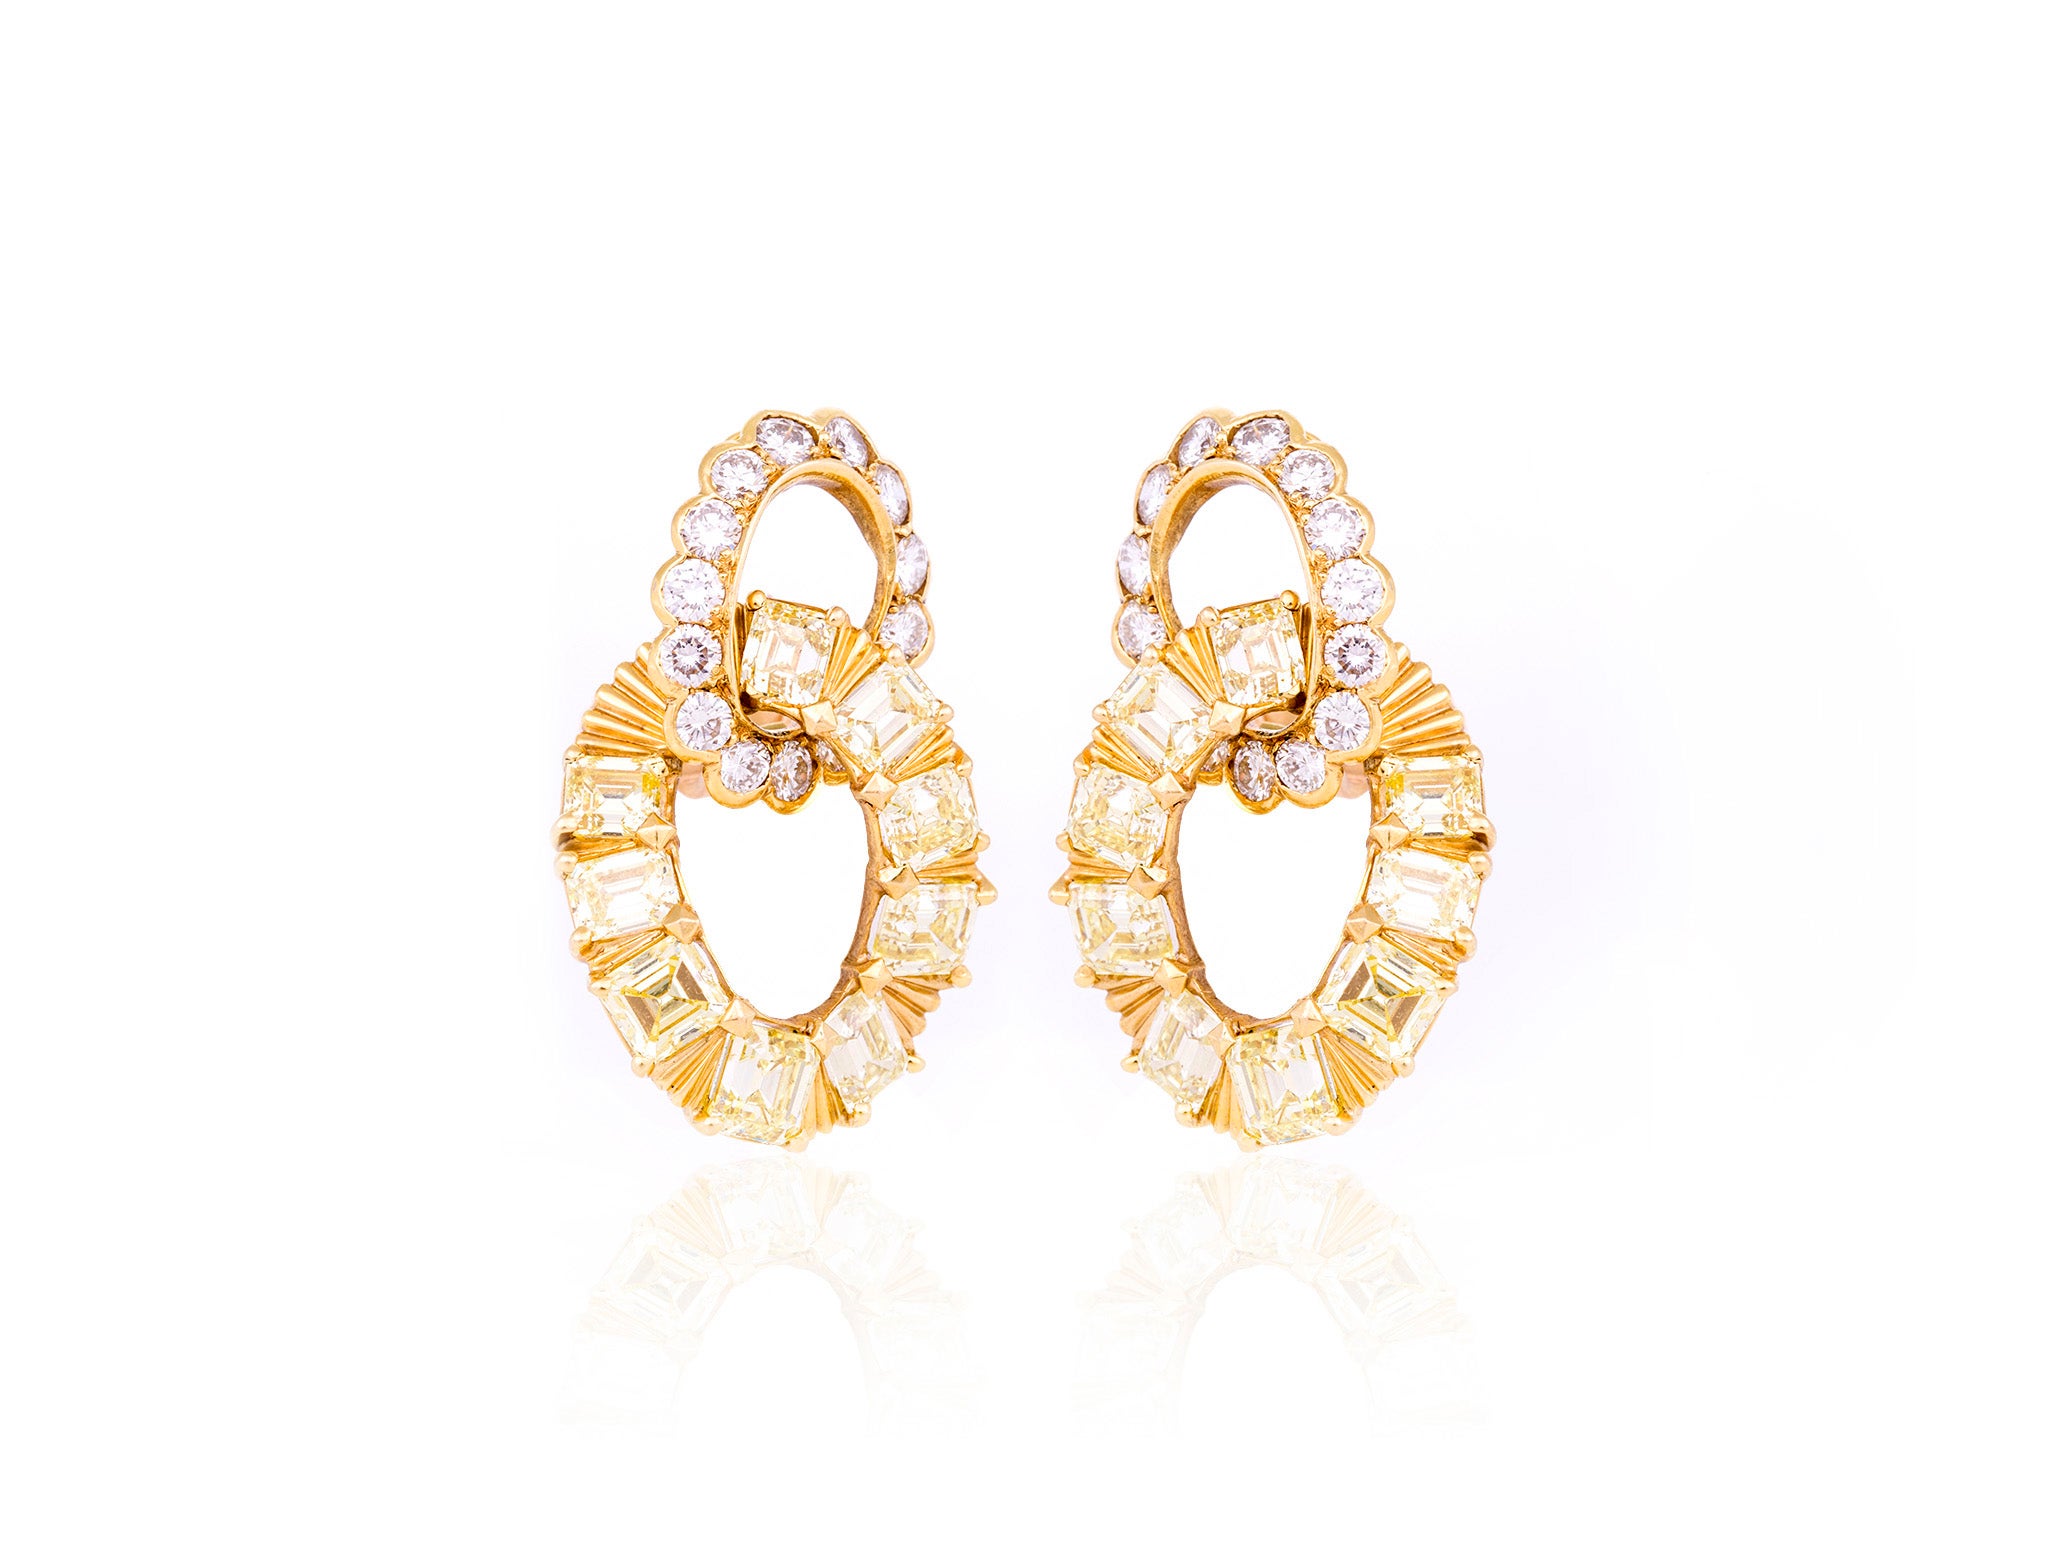 Van Cleef & Arpels White and Yellow Diamond Door Knockers Earrings